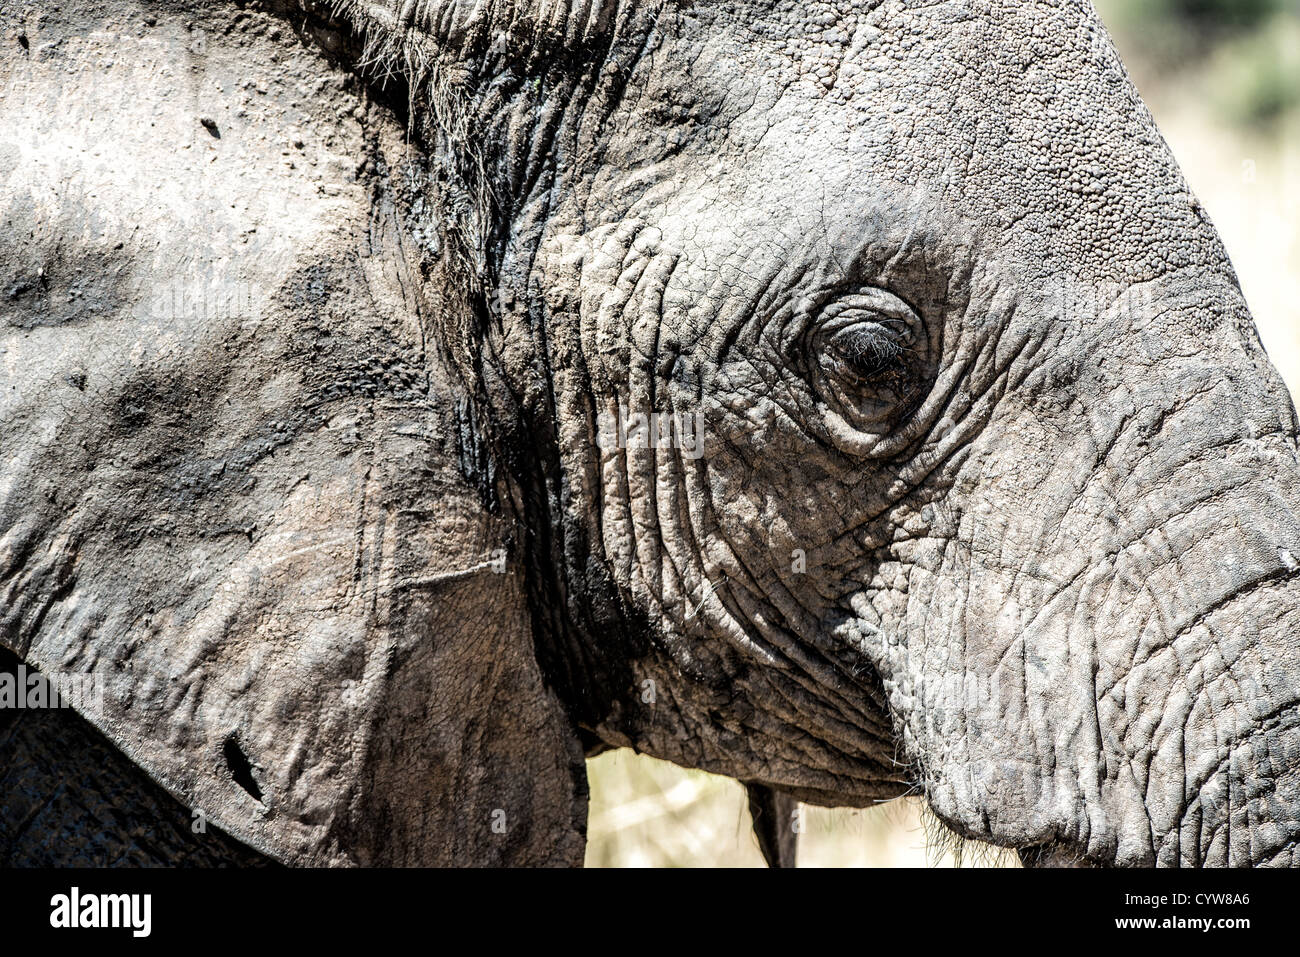 TARANGIRE-NATIONALPARK, Tansania - die Seite eines erwachsenen Elefanten im Tarangire-Nationalpark im Norden Tansanias, nicht weit vom Ngorongoro-Krater und der Serengeti. Der Ngorongoro-Krater, der zum UNESCO-Weltkulturerbe gehört, ist ein riesiger vulkanischer Krater im Norden Tansanias. Sie wurde vor 2-3 Millionen Jahren gegründet, hat einen Durchmesser von etwa 20 Kilometern und ist die Heimat vielfältiger Tiere, einschließlich der „Big Five“-Wildtiere. Das Ngorongoro Conservation Area, bewohnt von den Maasai, enthält auch bedeutende archäologische Stätten wie die Olduvai-Schlucht und Laetoli, die Einblicke in das frühe Summen bieten Stockfoto